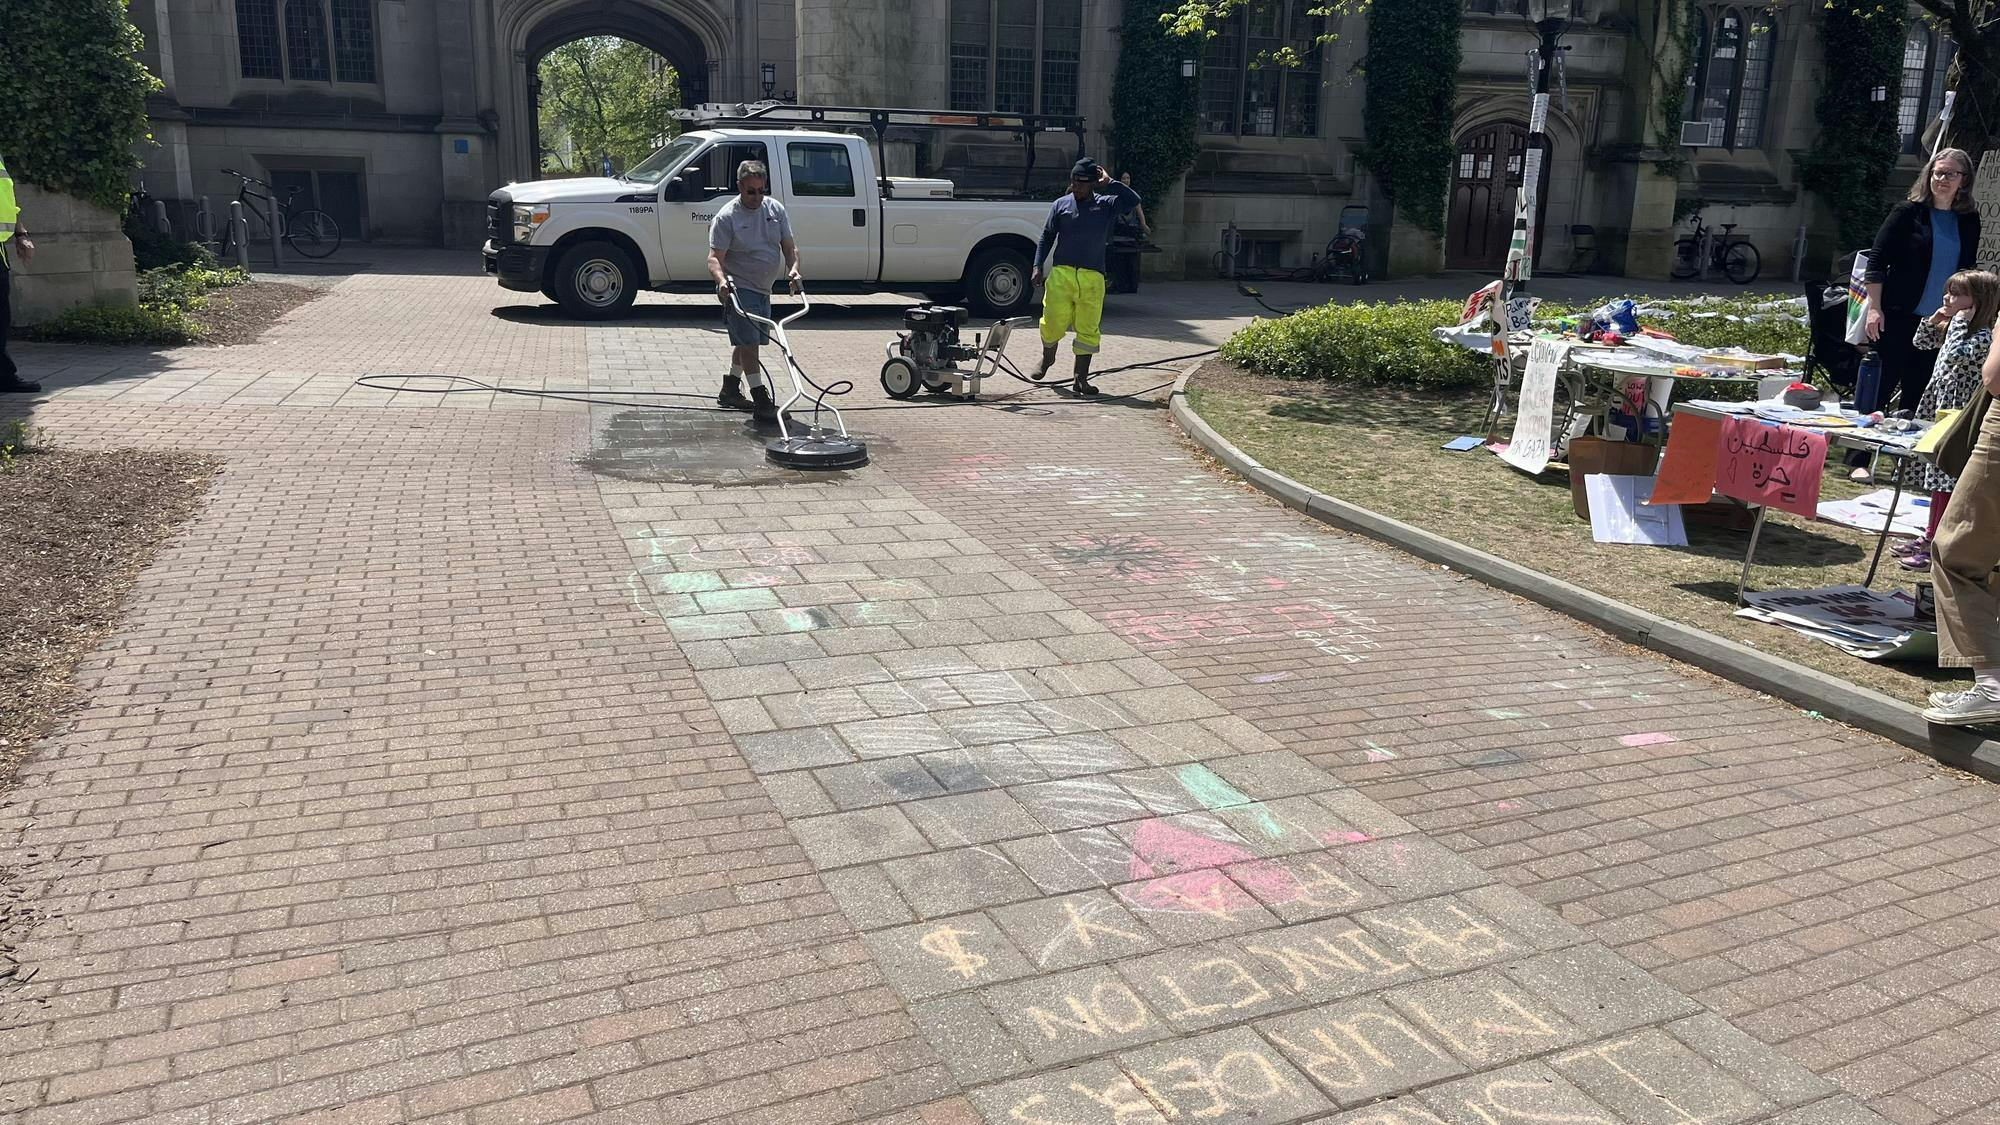 A man in a gray shirt uses a power washing machine to scrub chalk off a sidewalk.